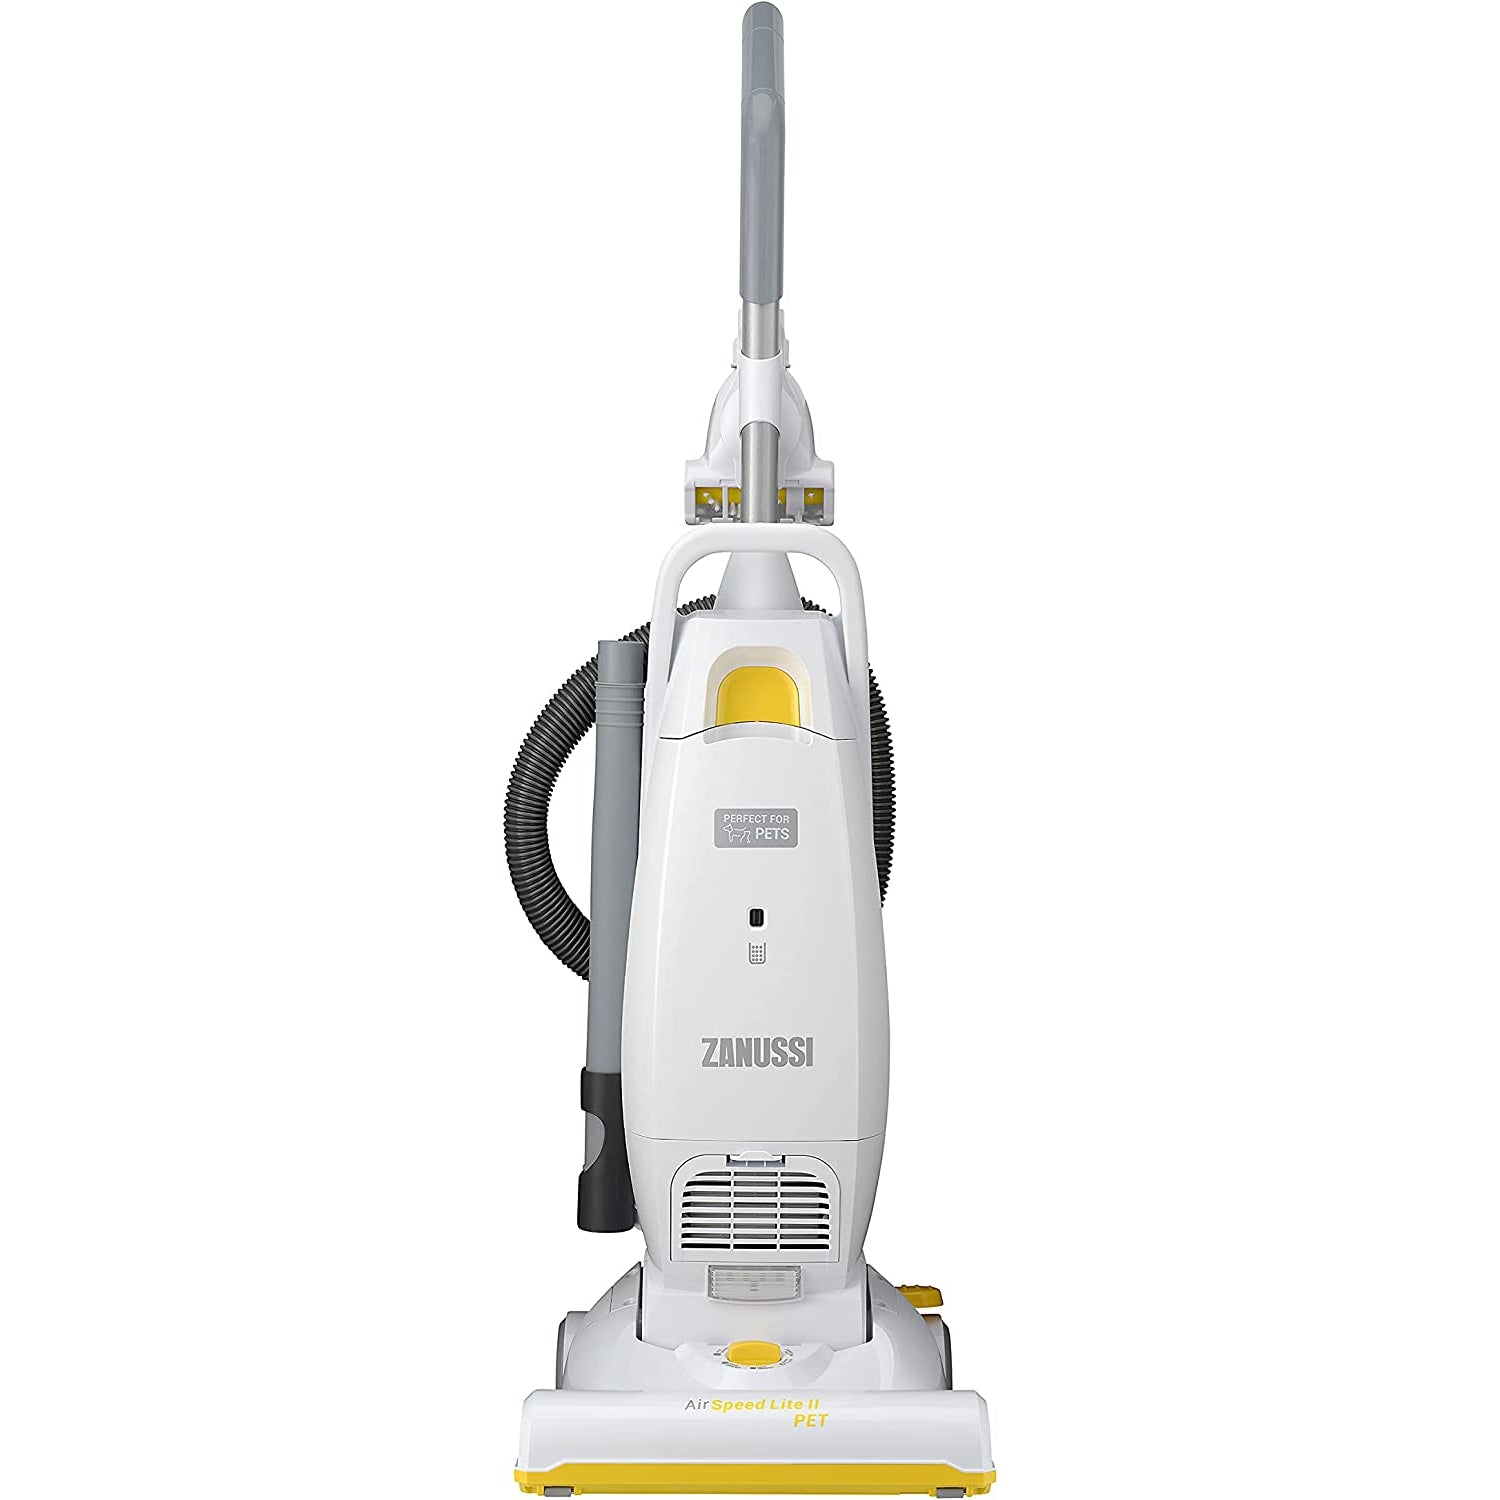 Zanussi AirSpeed Lite II Pet ZAN2087PT Upright Vacuum Cleaner - White/Yellow - New